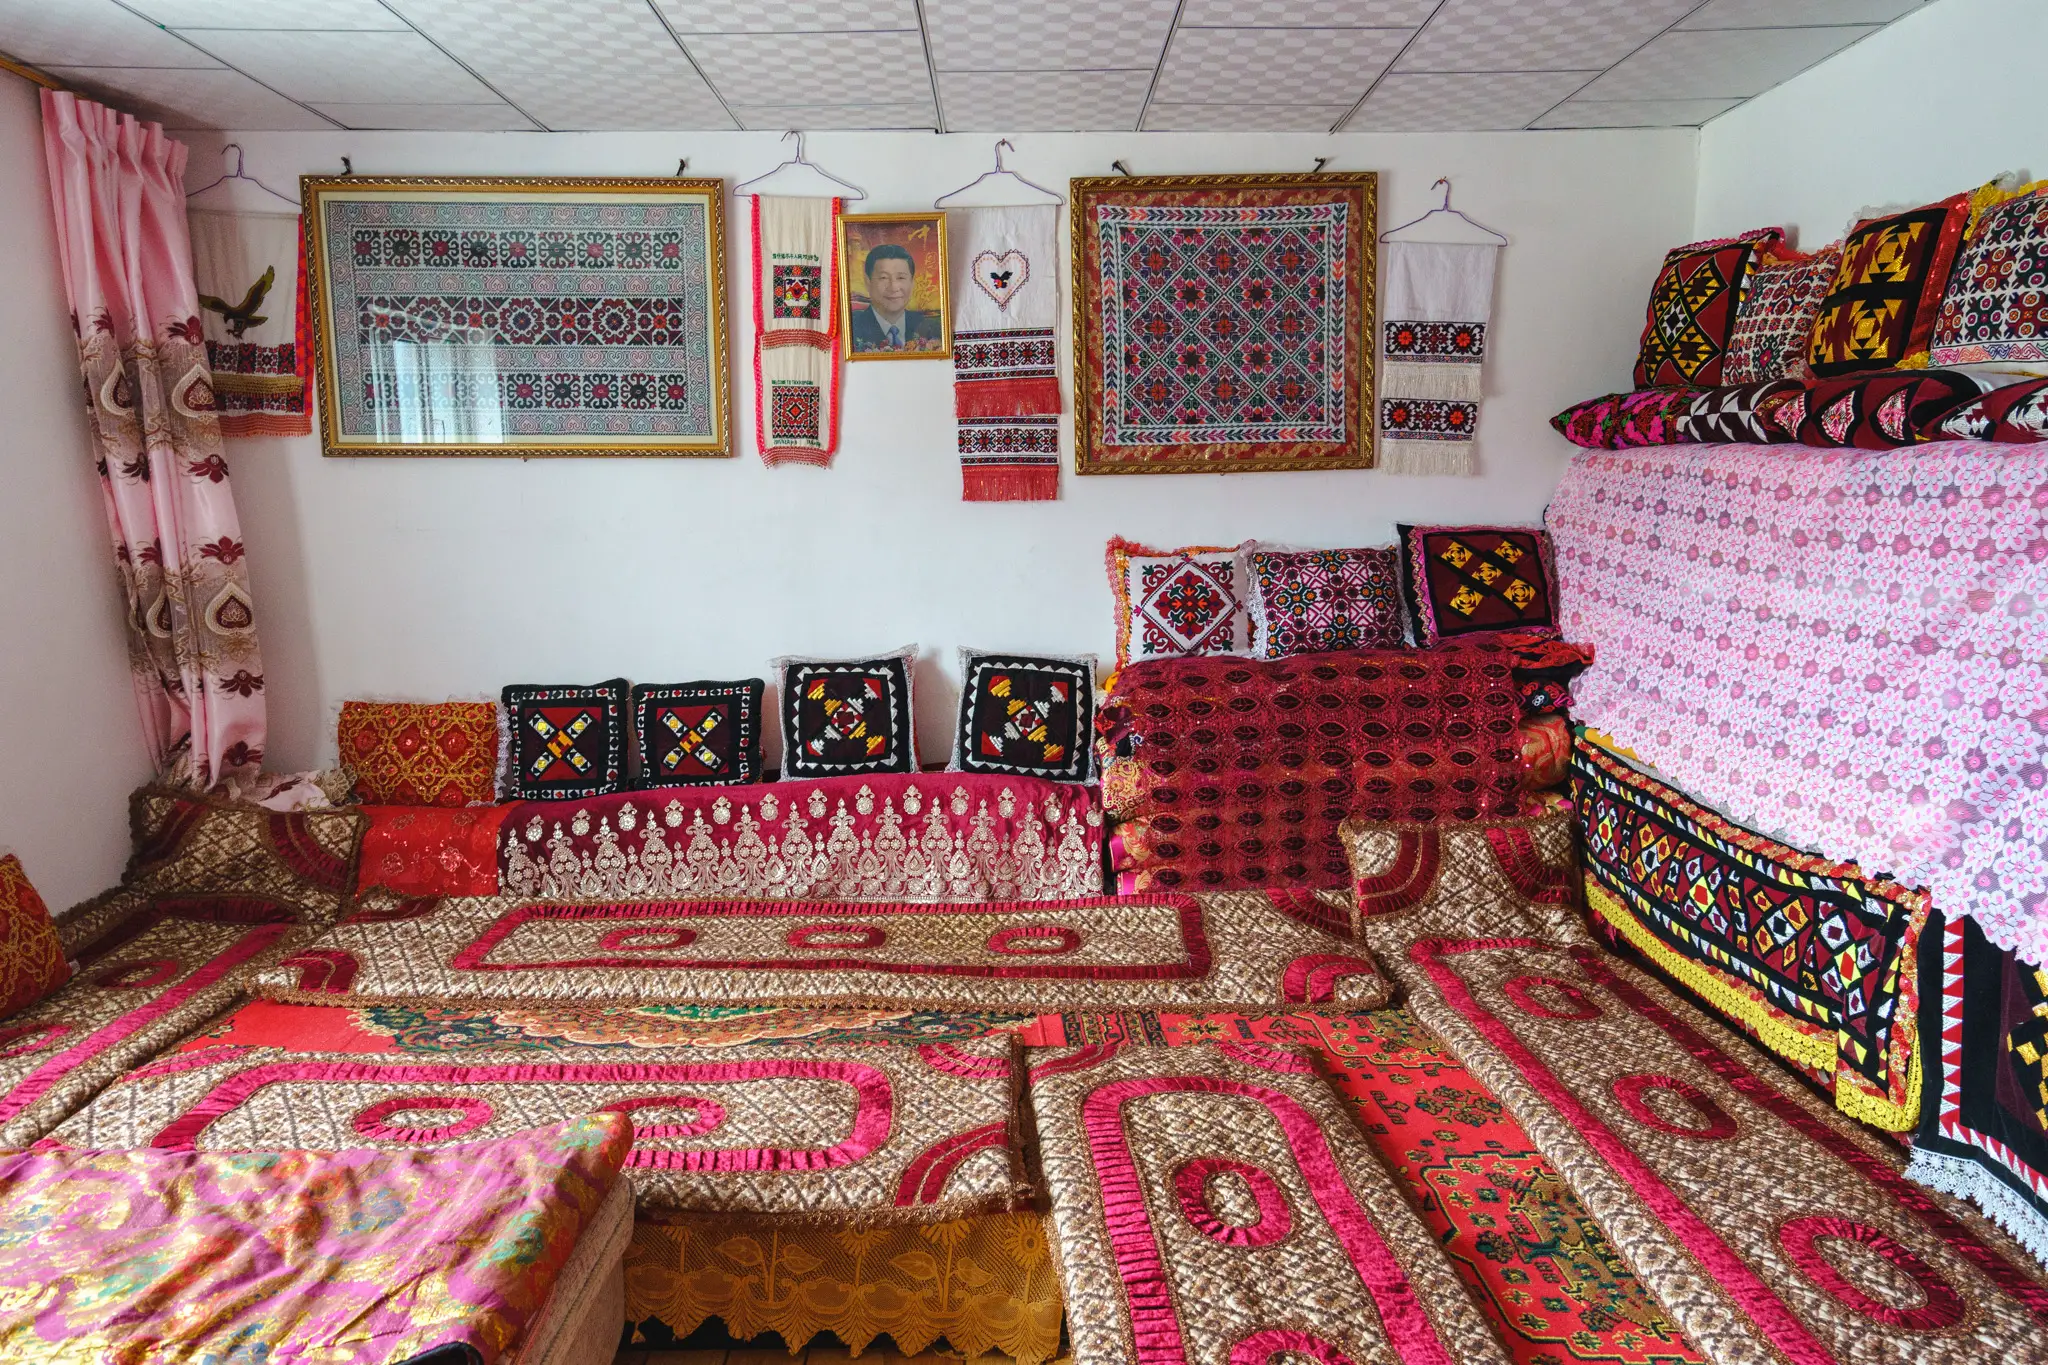 Tajik home in Tashkurgan, Xinjiang